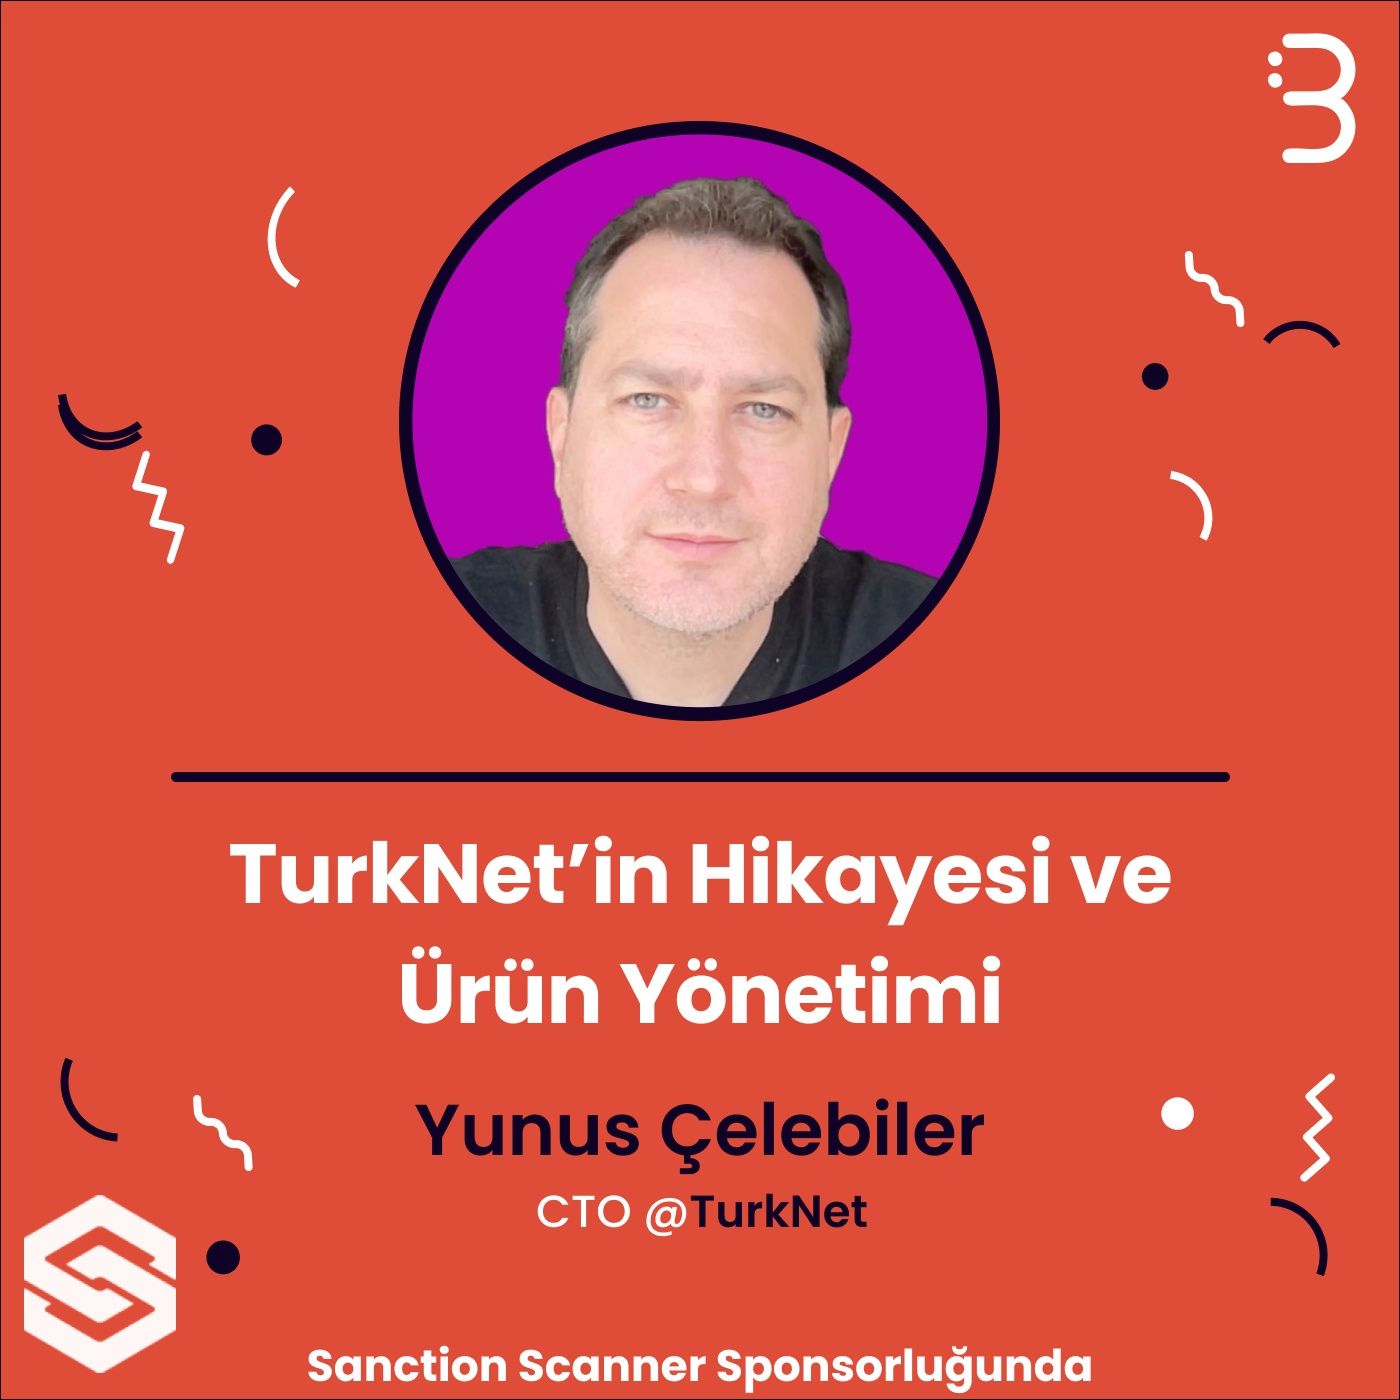 Yunus Çelebiler | Turknet - TurkNet’in Hikayesi ve Ürün Yönetimi